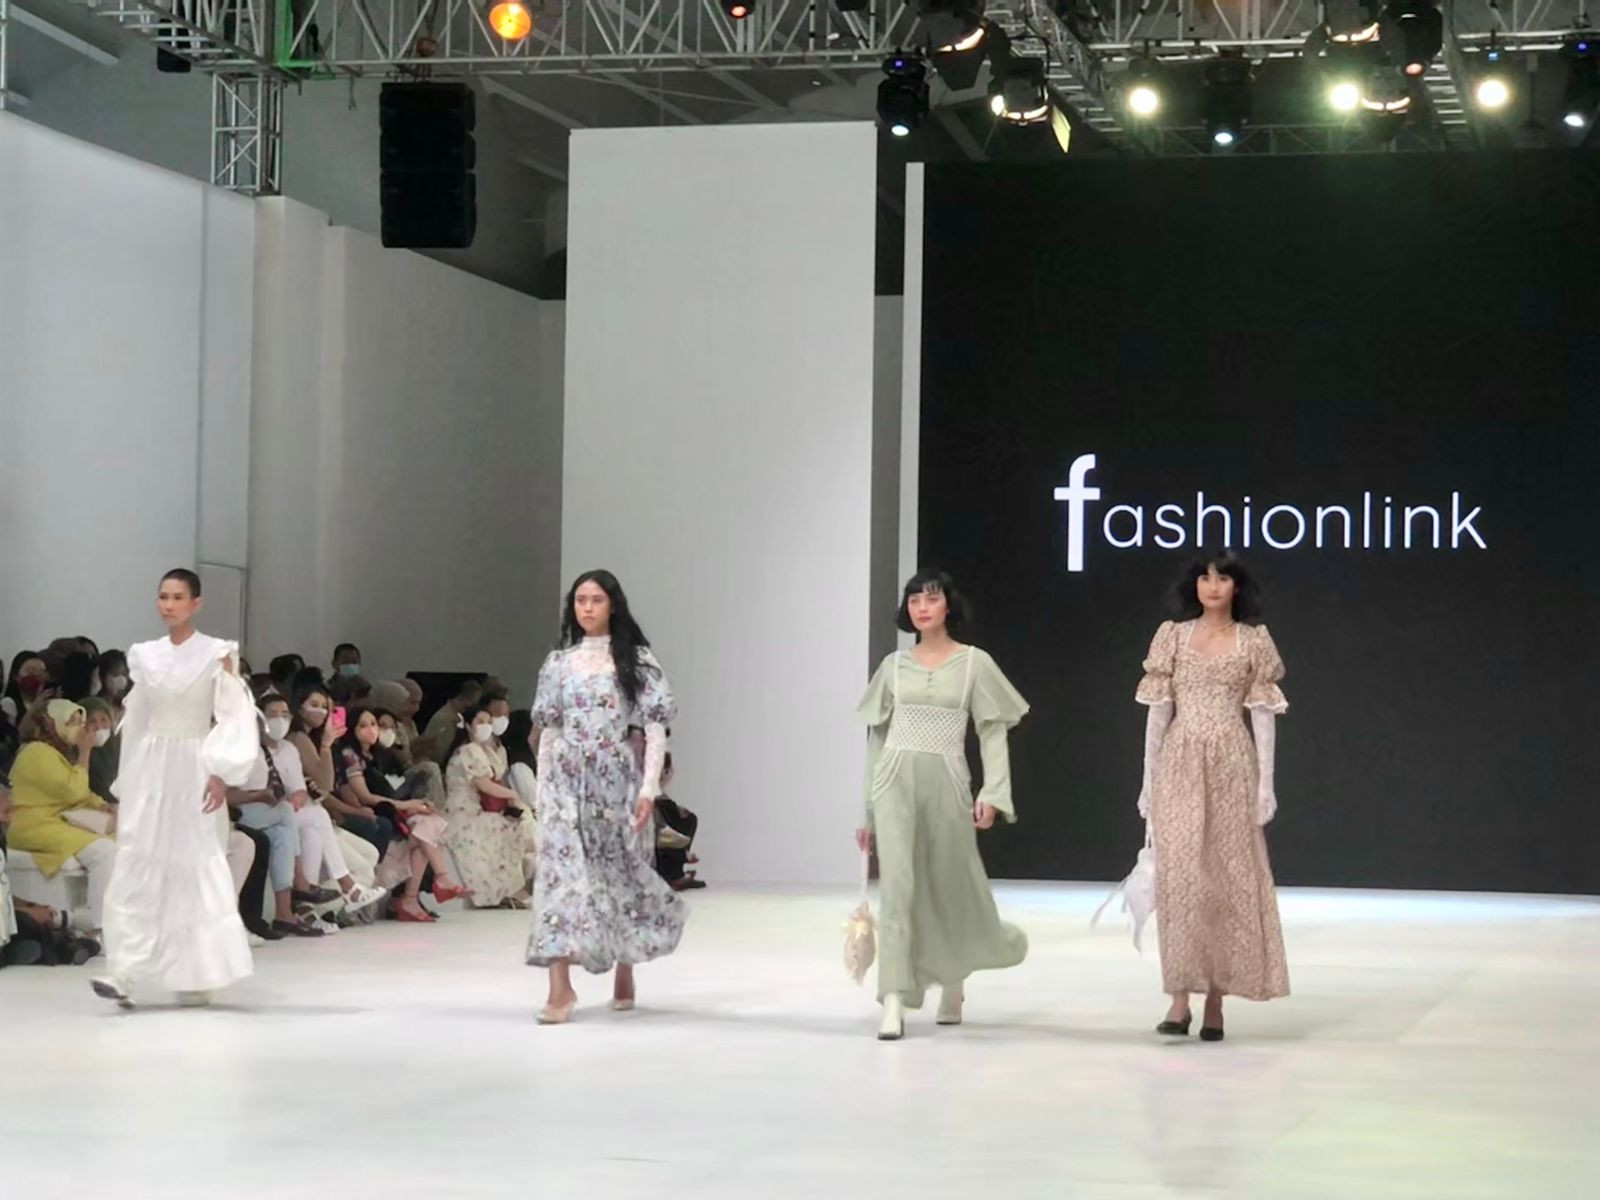 Fashionlink Gandeng 3 Desainer Hadirkan Rancangan Busana Bertema Musim Semi